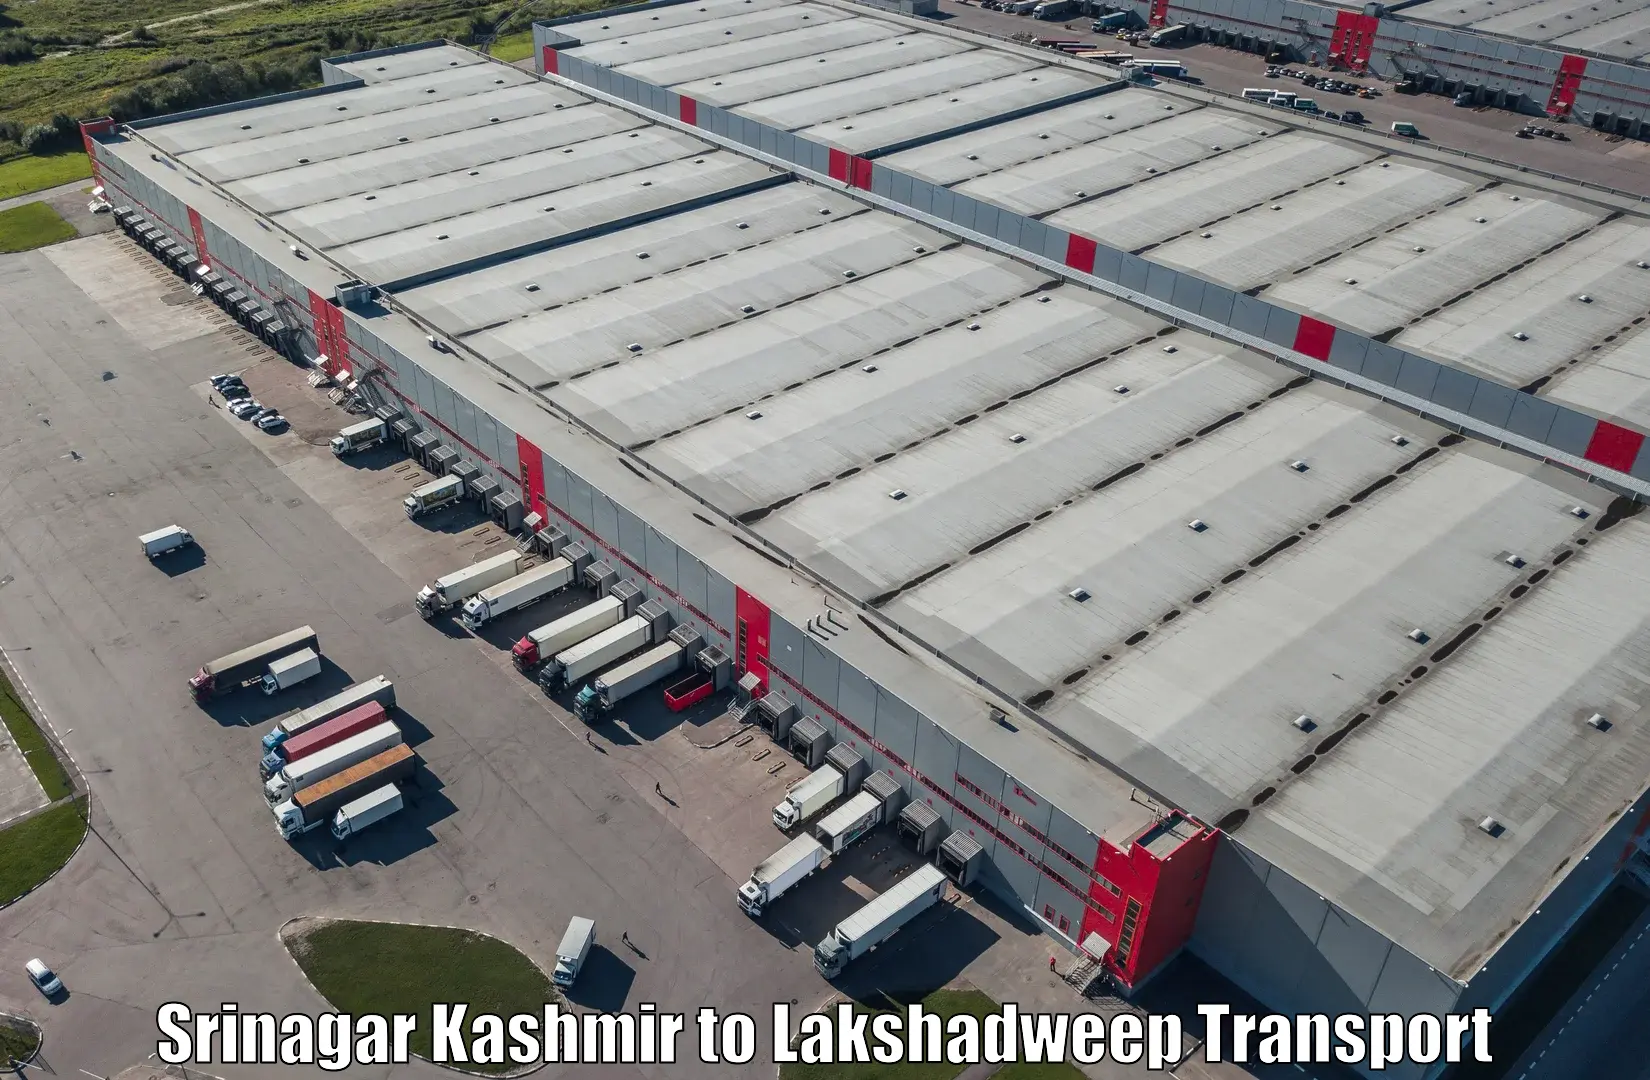 Daily transport service Srinagar Kashmir to Lakshadweep